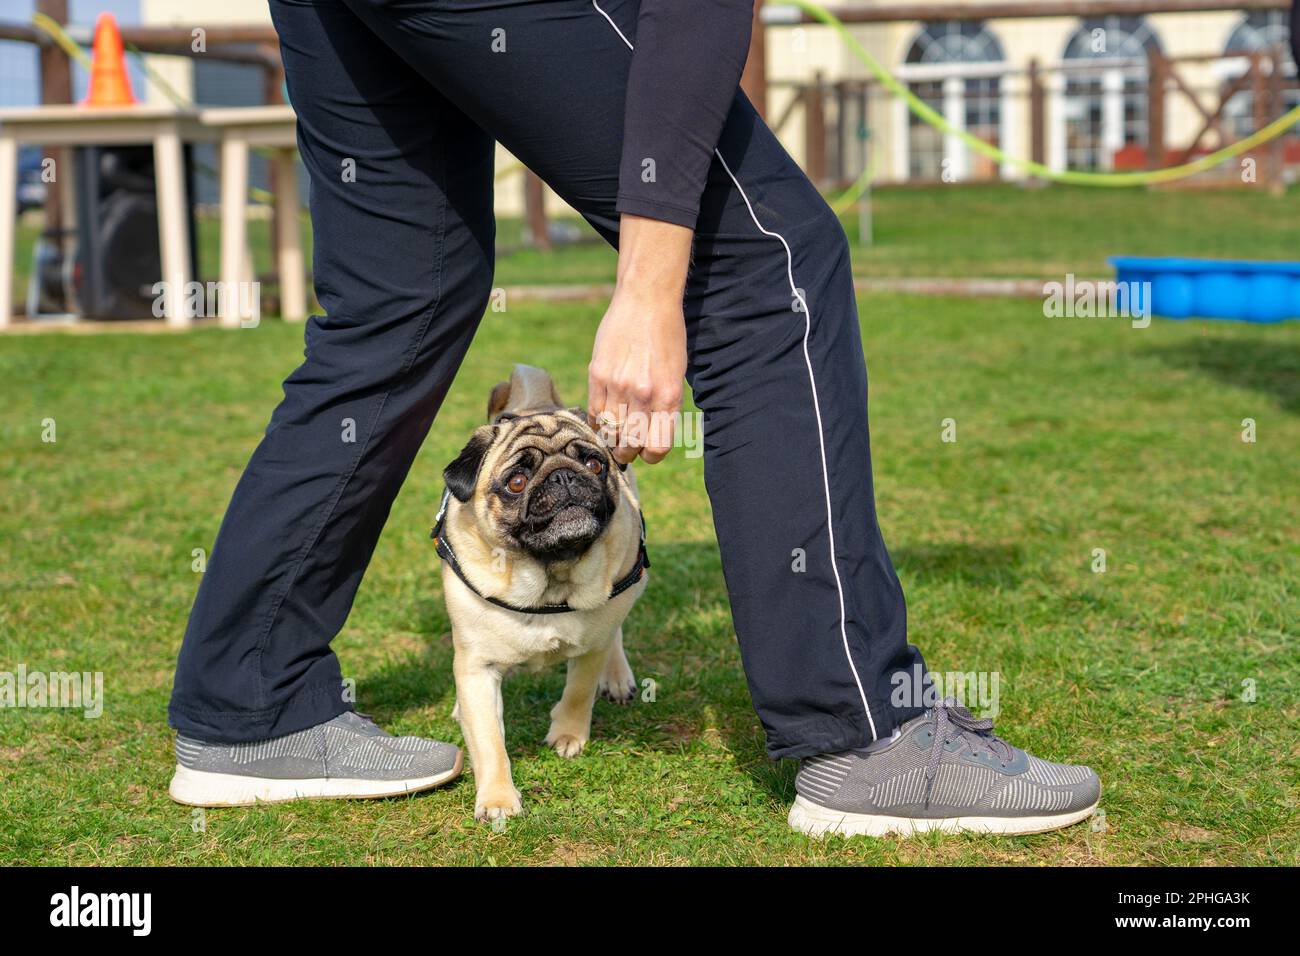 femme entraîneur enseignant un mops chien pug lui montrant ce qu'il faut faire dans une école de chien . Banque D'Images